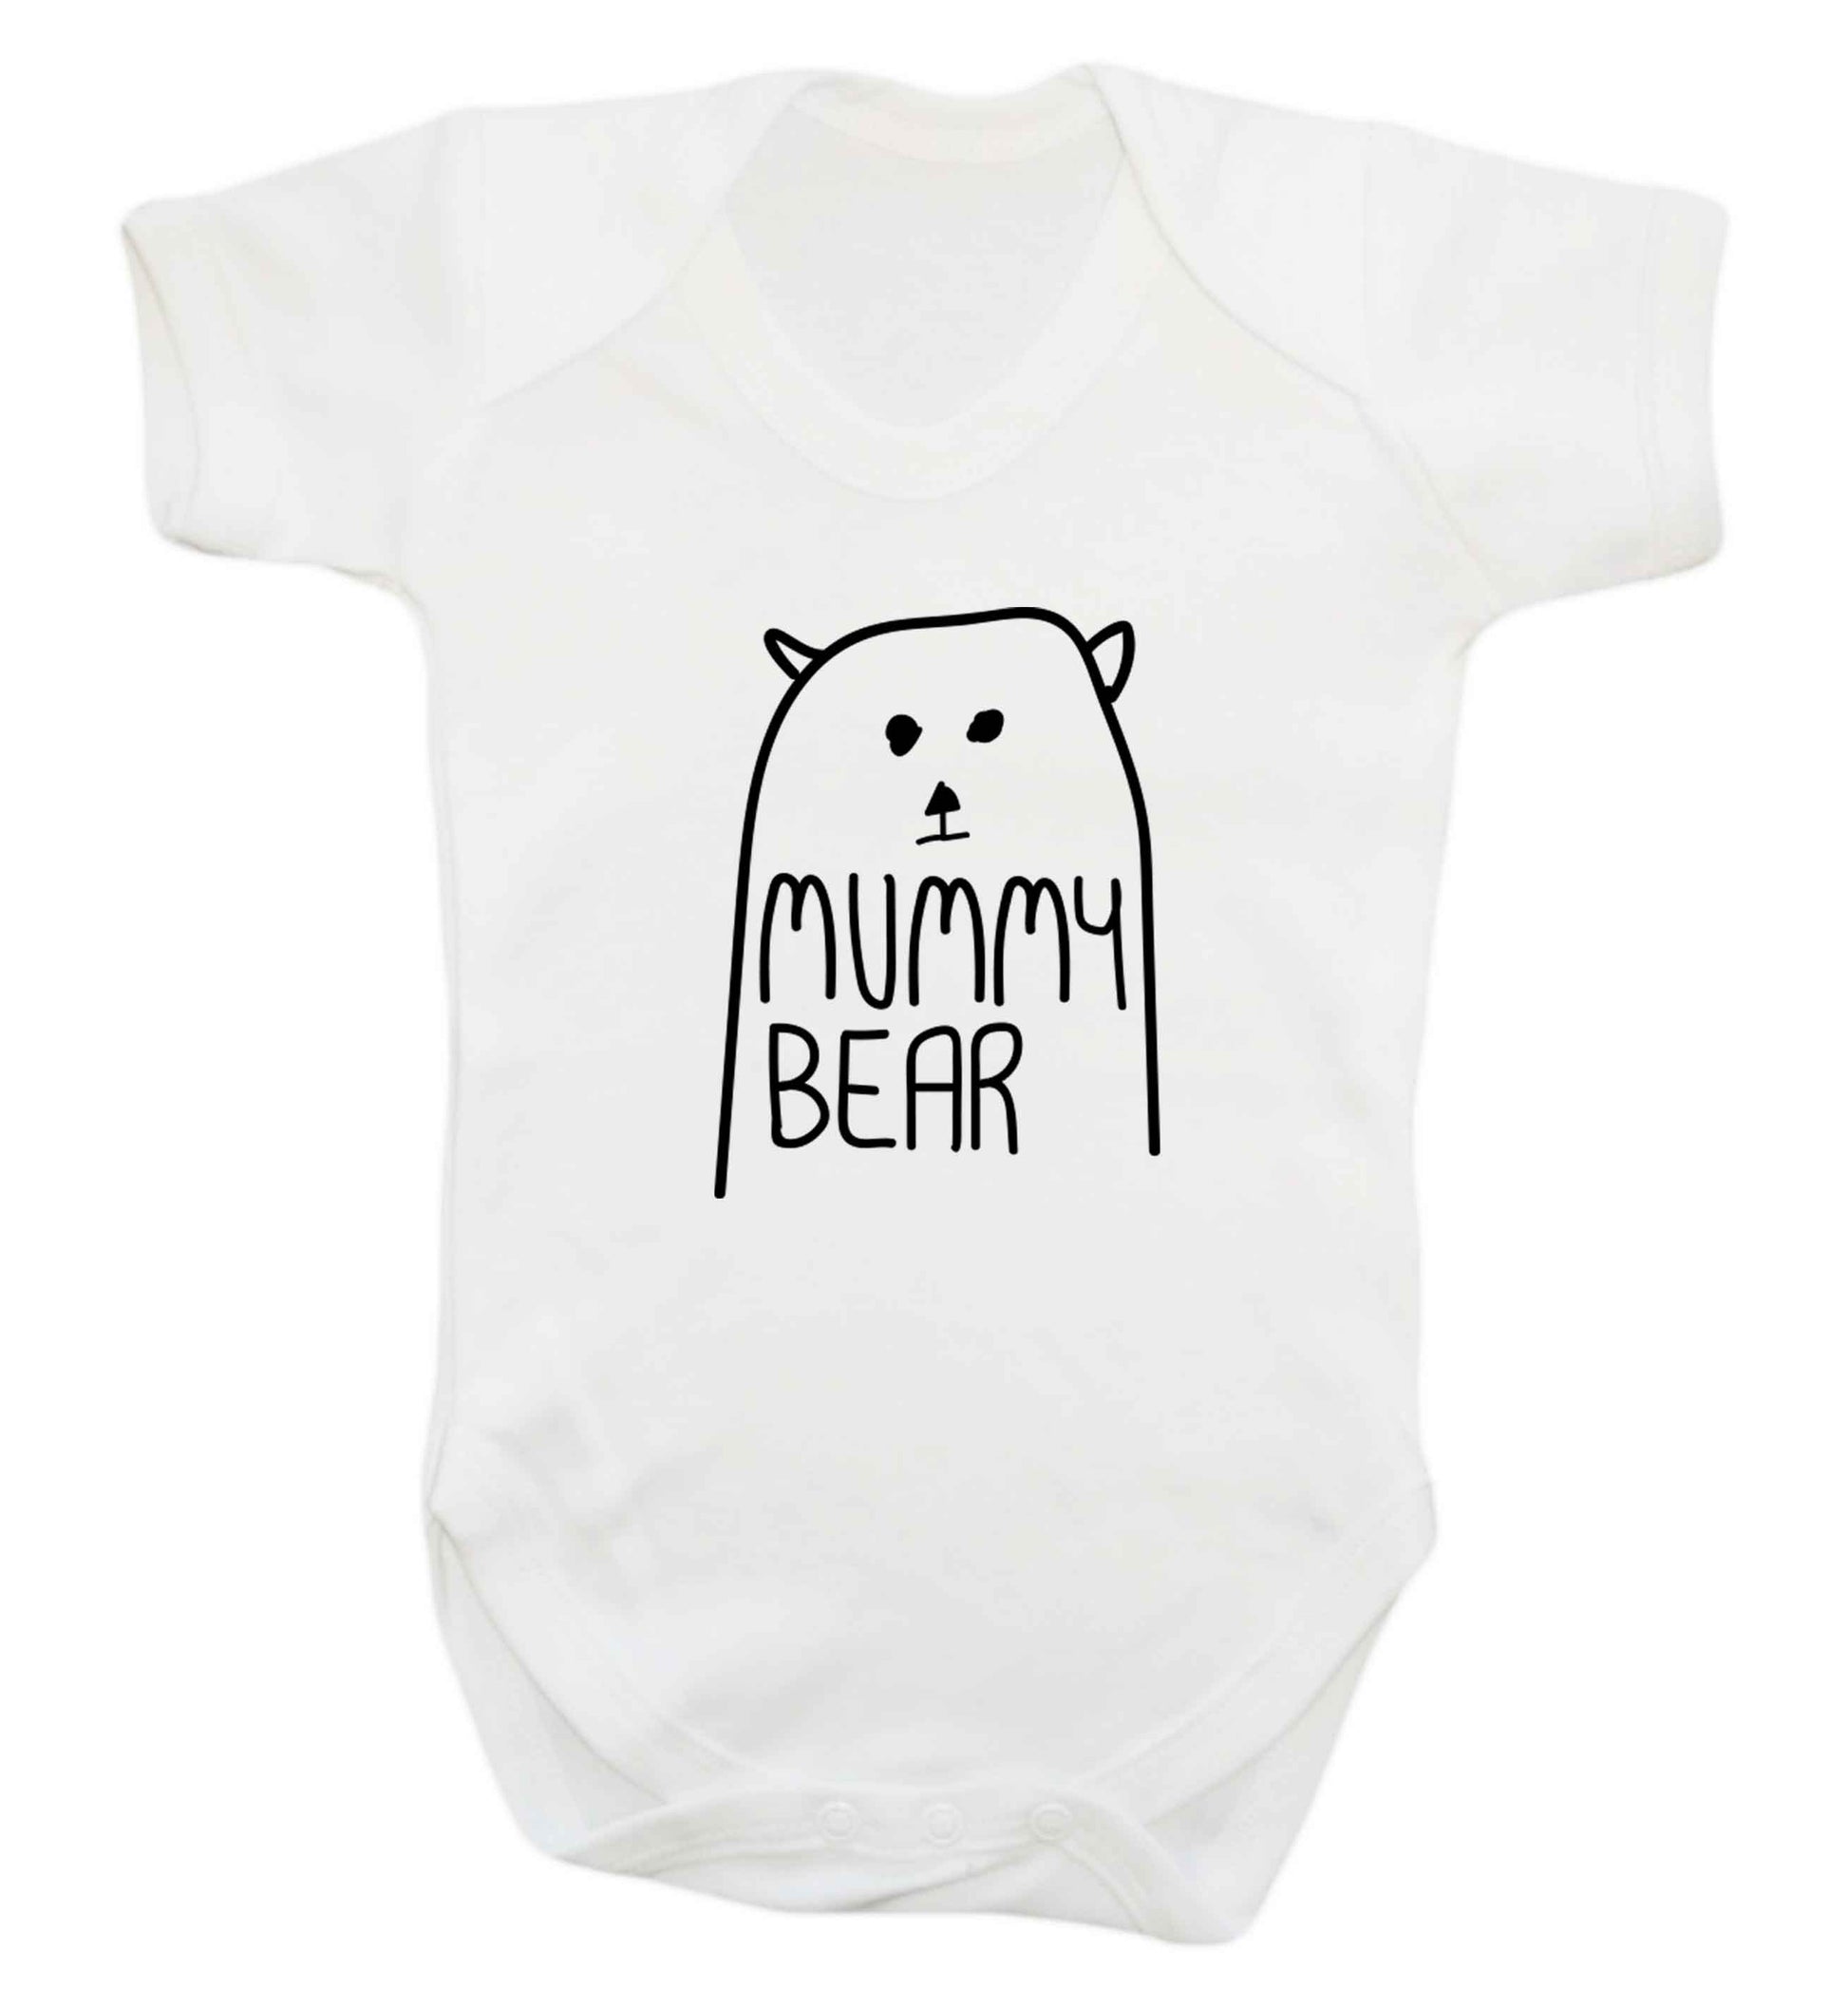 Mummy bear baby vest white 18-24 months